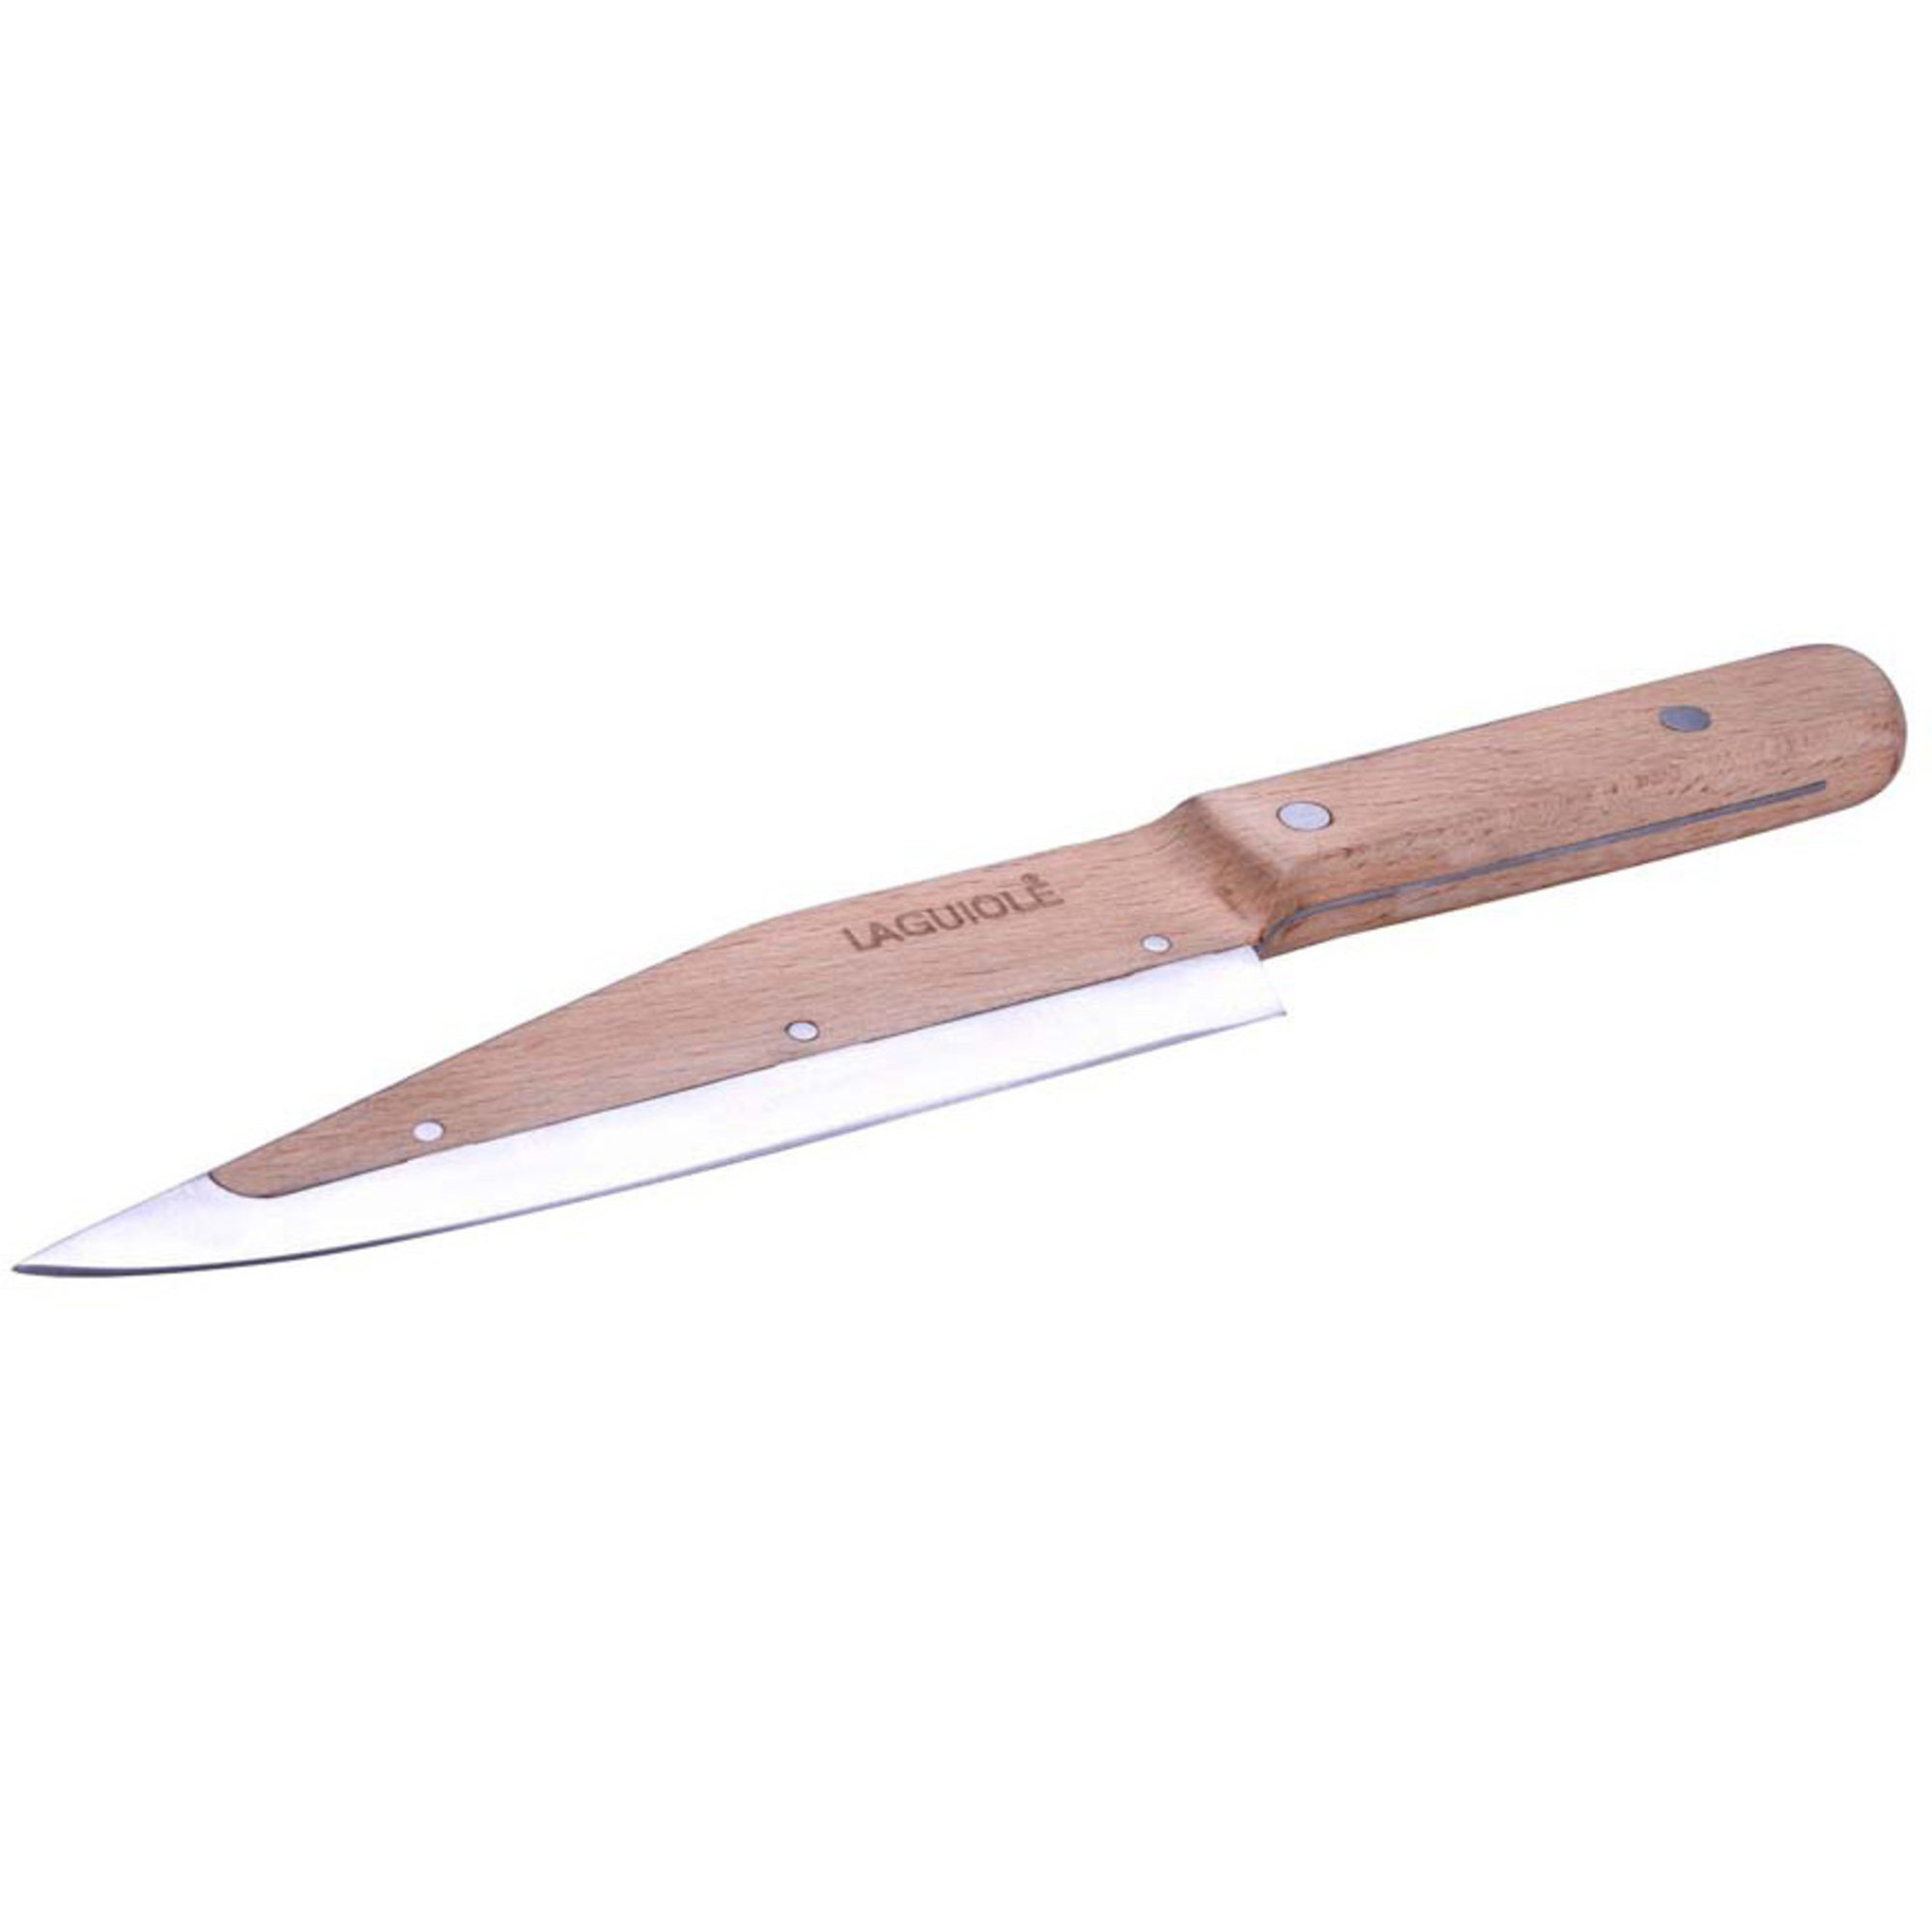 Laguiole Universalkniv i søg med stålkerne 29 cm